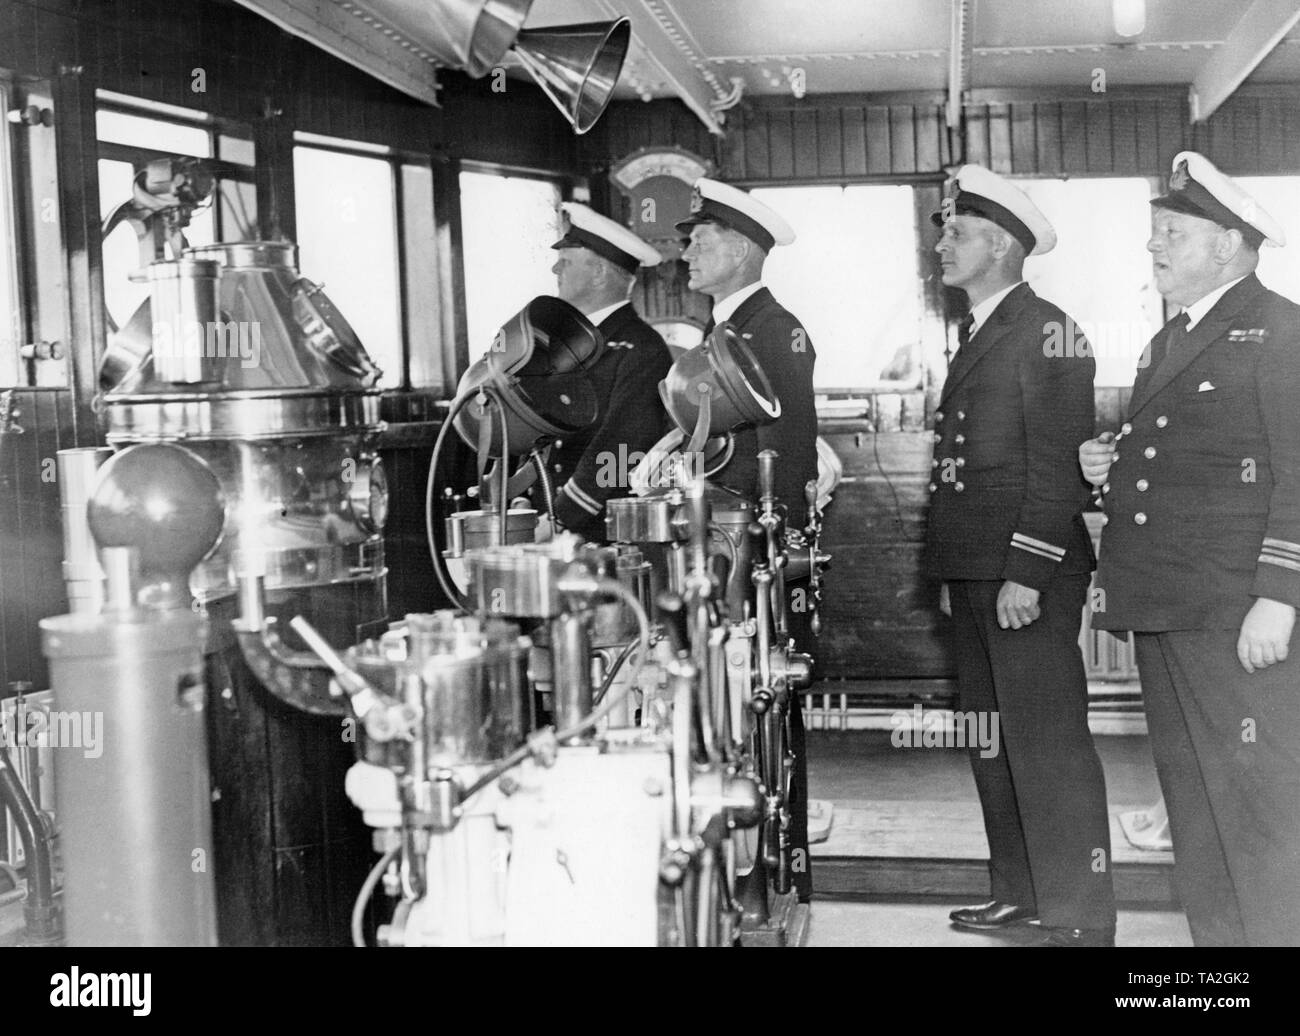 P.O.Davis (Zweiter Offizier), A.C.I. Anson (Dritter Offizier), F.G. Watt (Dritter Offizier) und G.L. Dunbar (First Officer) auf der Brücke der Ozeanriese "Queen Mary" vor ihrer Jungfernfahrt von Southampton nach New York. Stockfoto